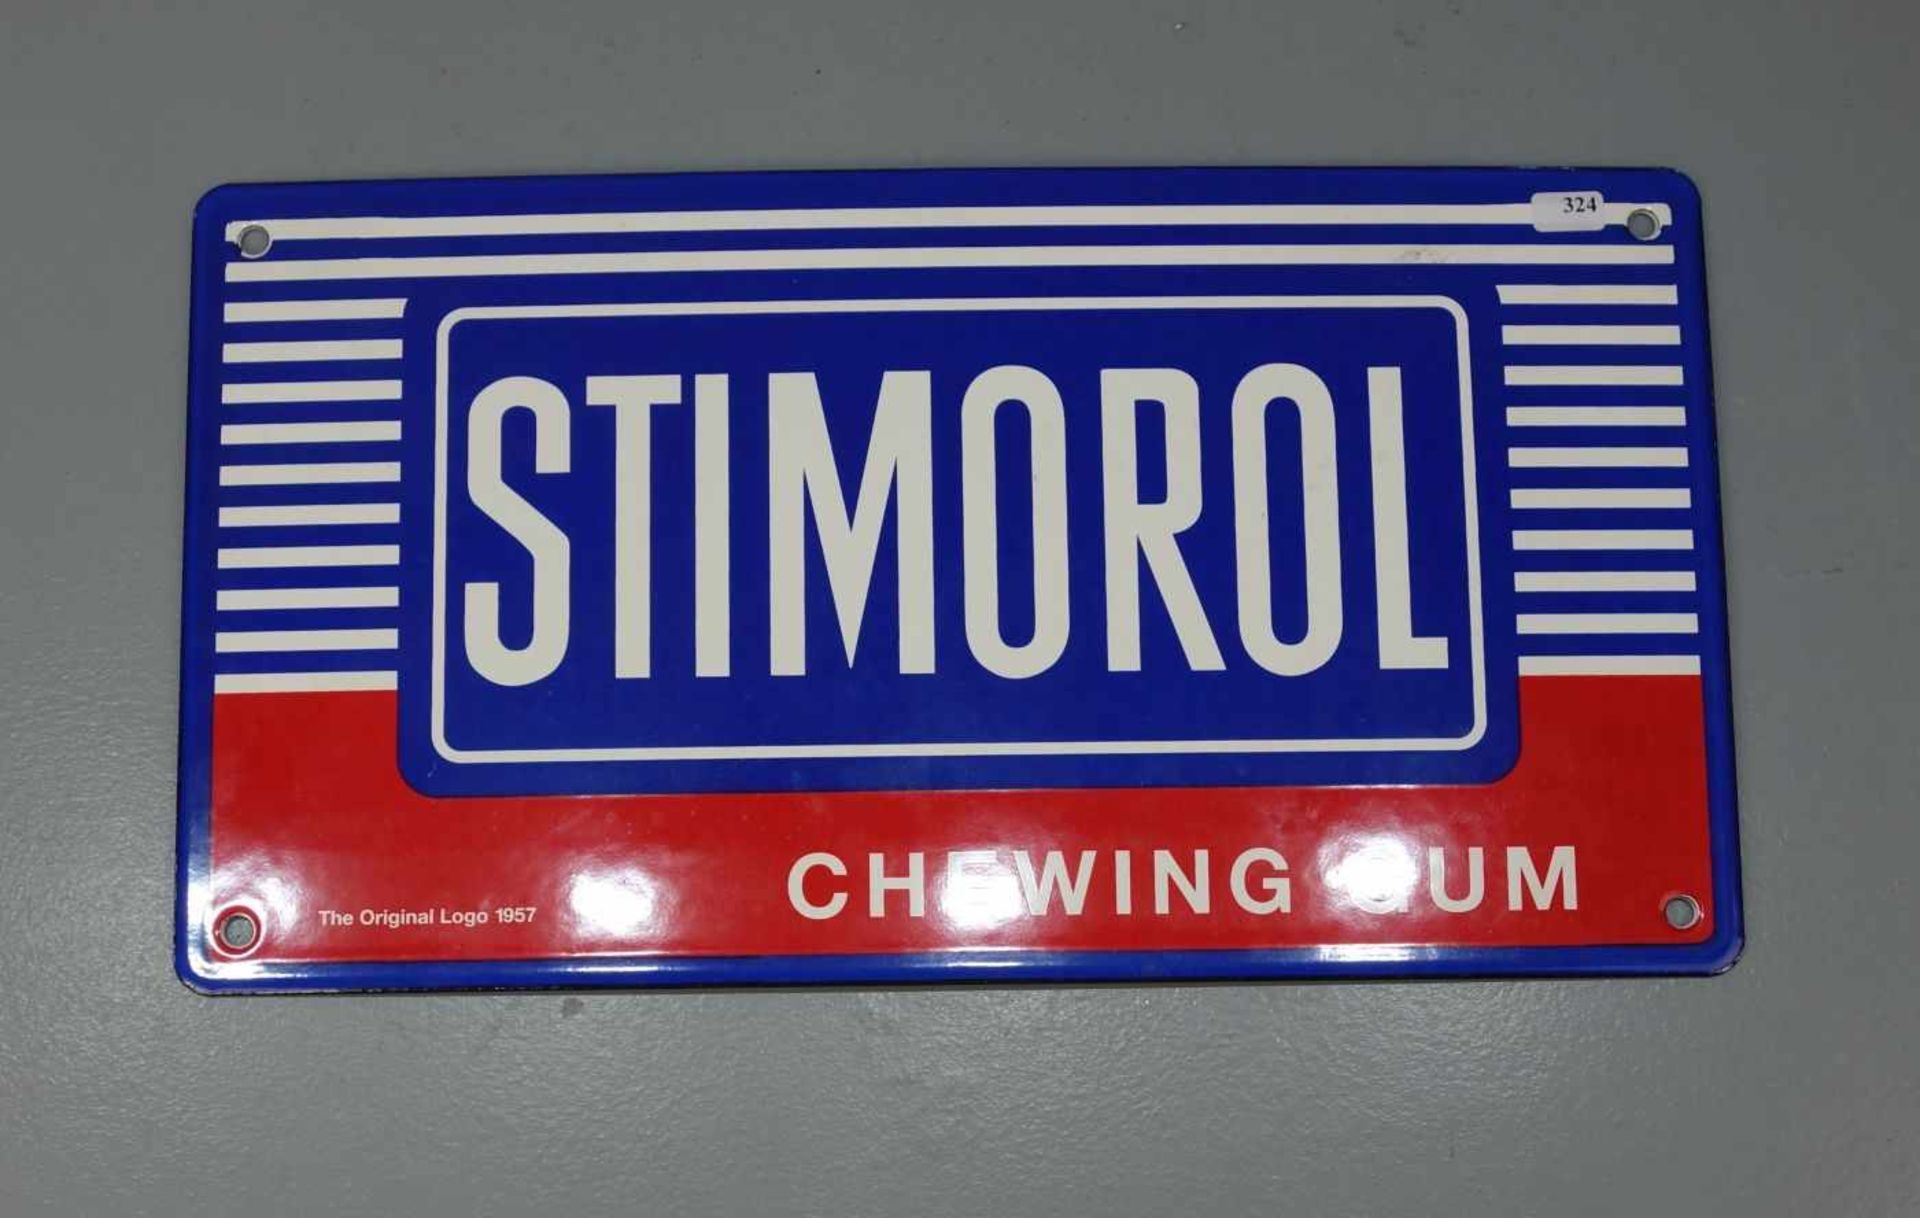 EMAILLESCHILD / BLECHSCHILD / WERBESCHILD "Stimorol Chewing Gum". Schmalrechteckiges,